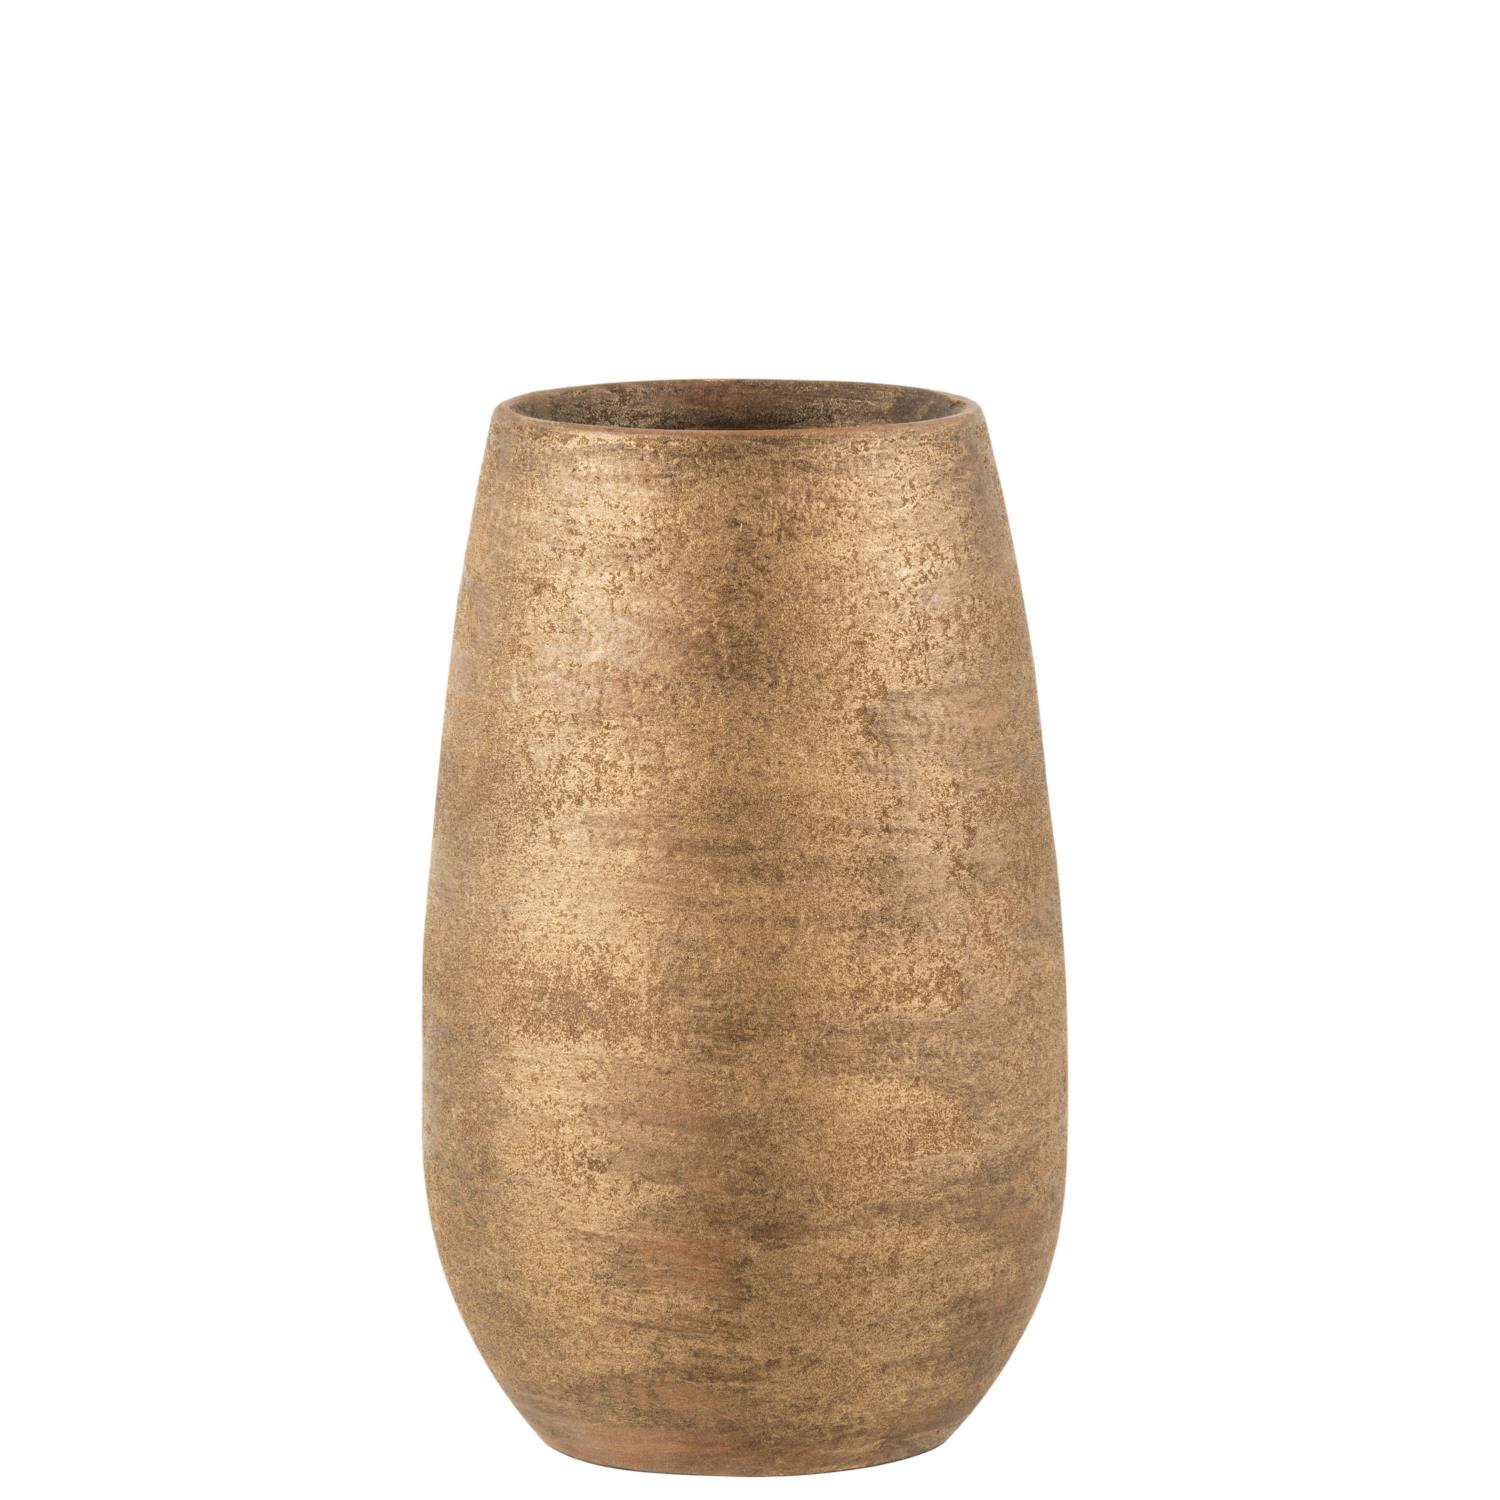 Vase Irregular Rough Ceramic 18x18x31cm 17861